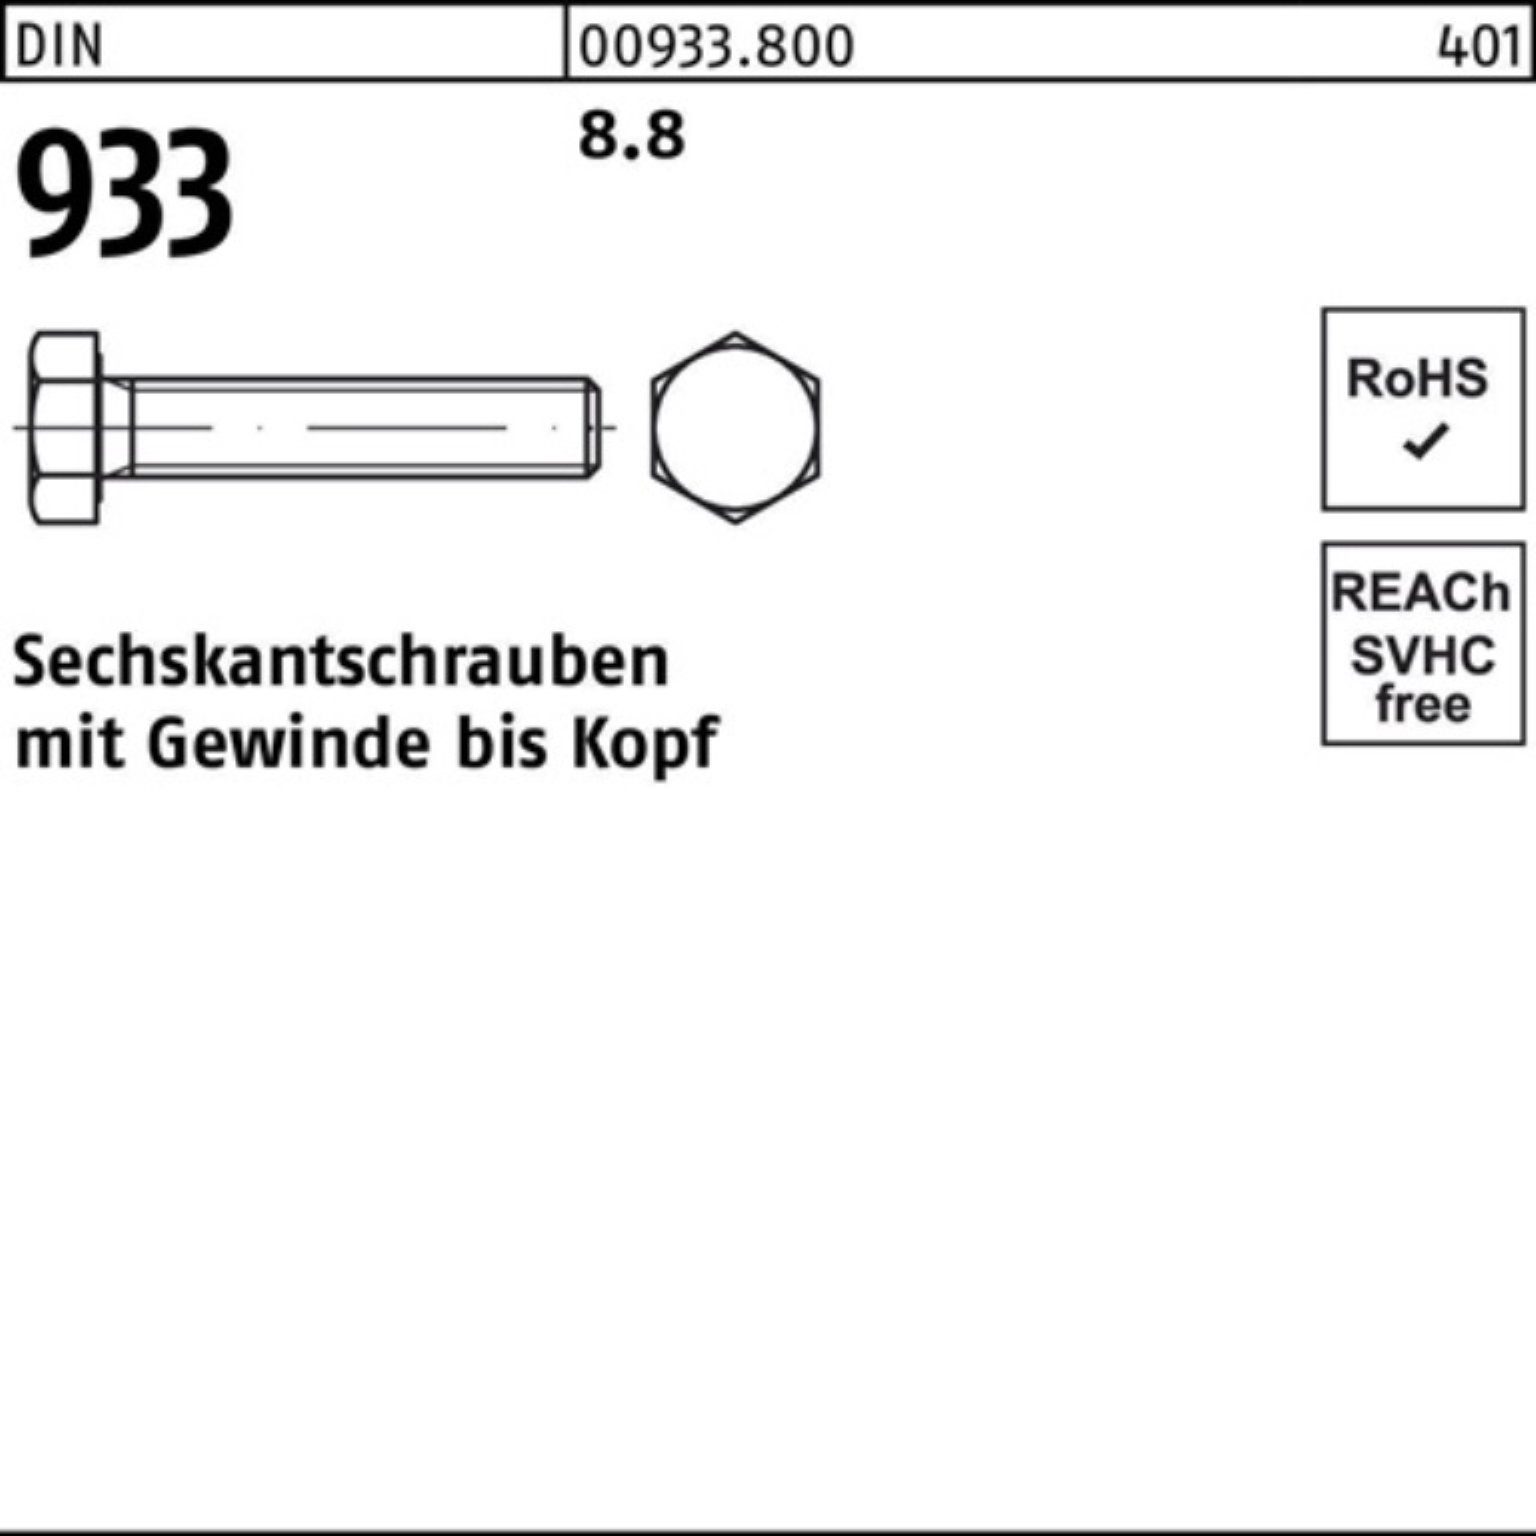 VG DIN 1 Stück DIN M33x 8.8 100er Sechskantschraube 933 8 Sechskantschraube Reyher Pack 933 75